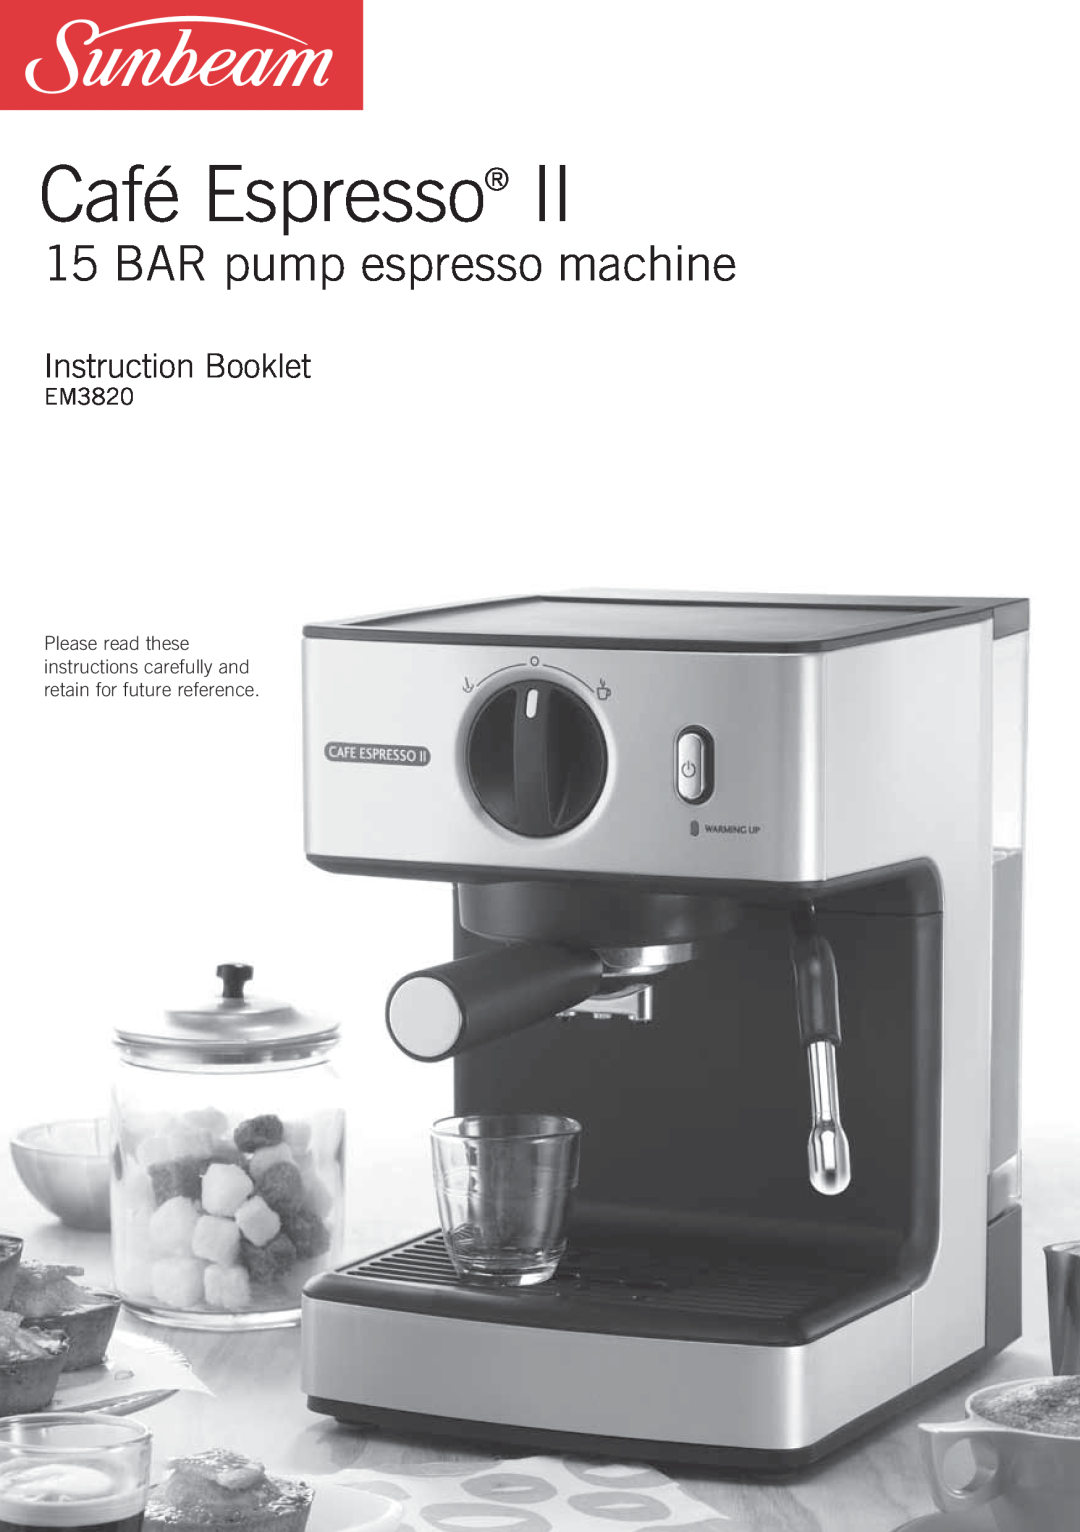 Sunbeam EM3820 manual Café Espresso, BAR pump espresso machine, Instruction Booklet 